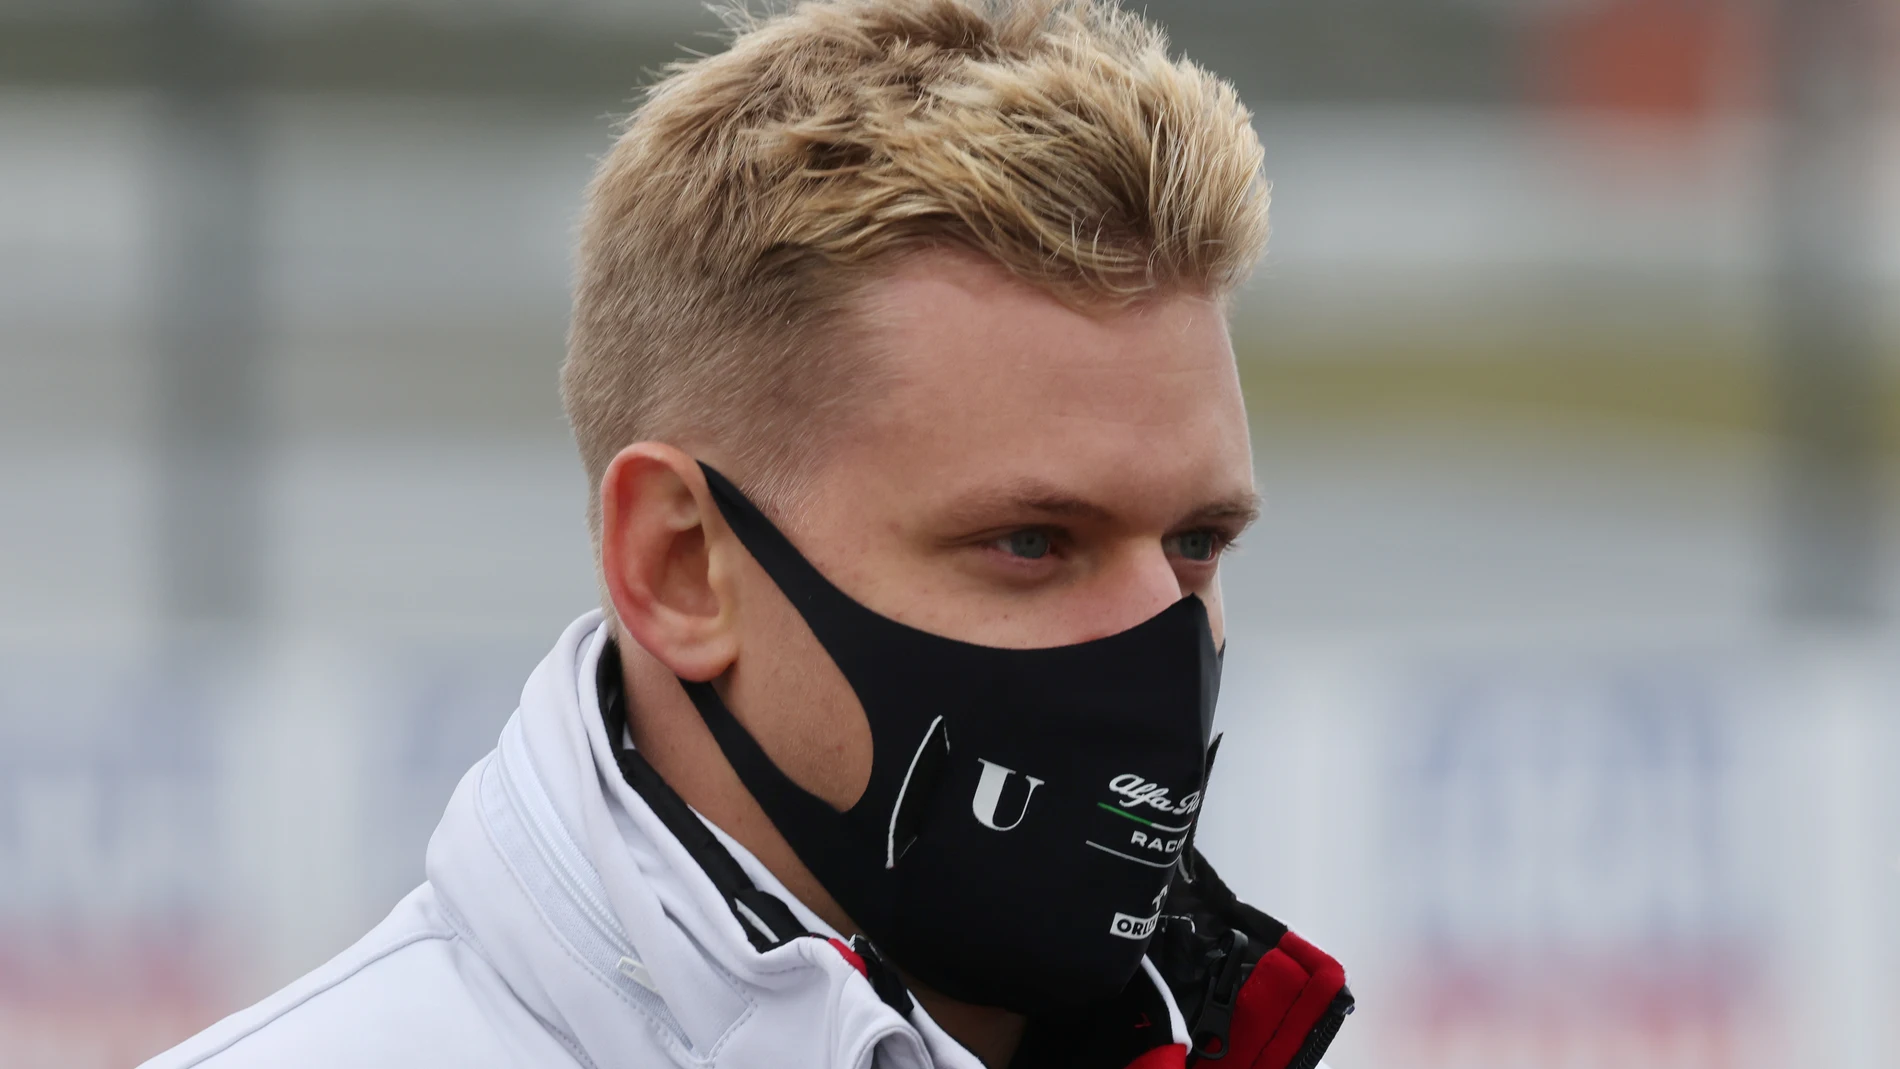 Mick Schumacher se estrena en Fórmula 1